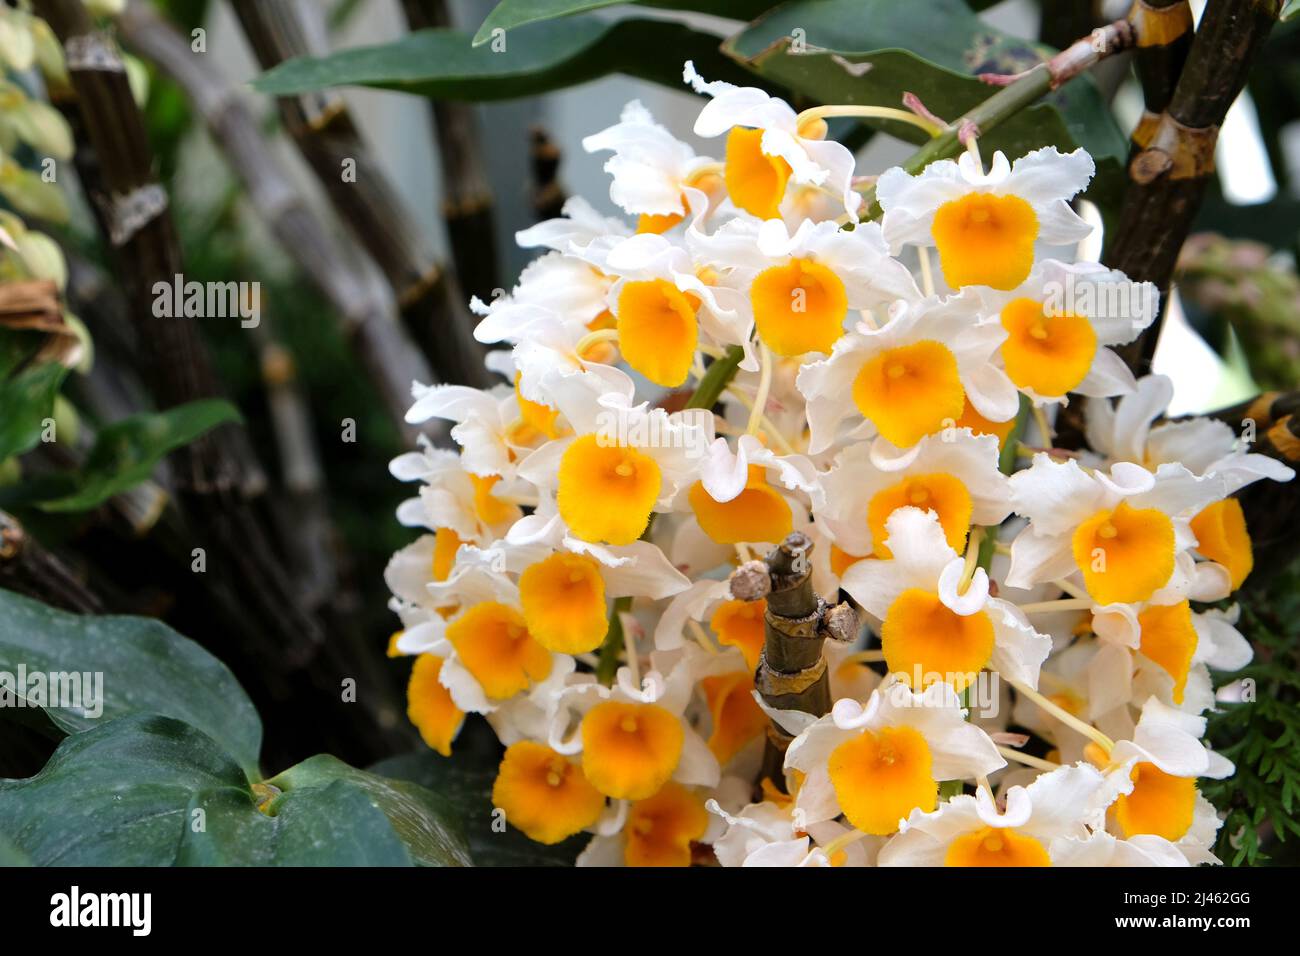 Dendrobium thyrsiflorum Rchb.f. species orchid in flower. Stock Photo